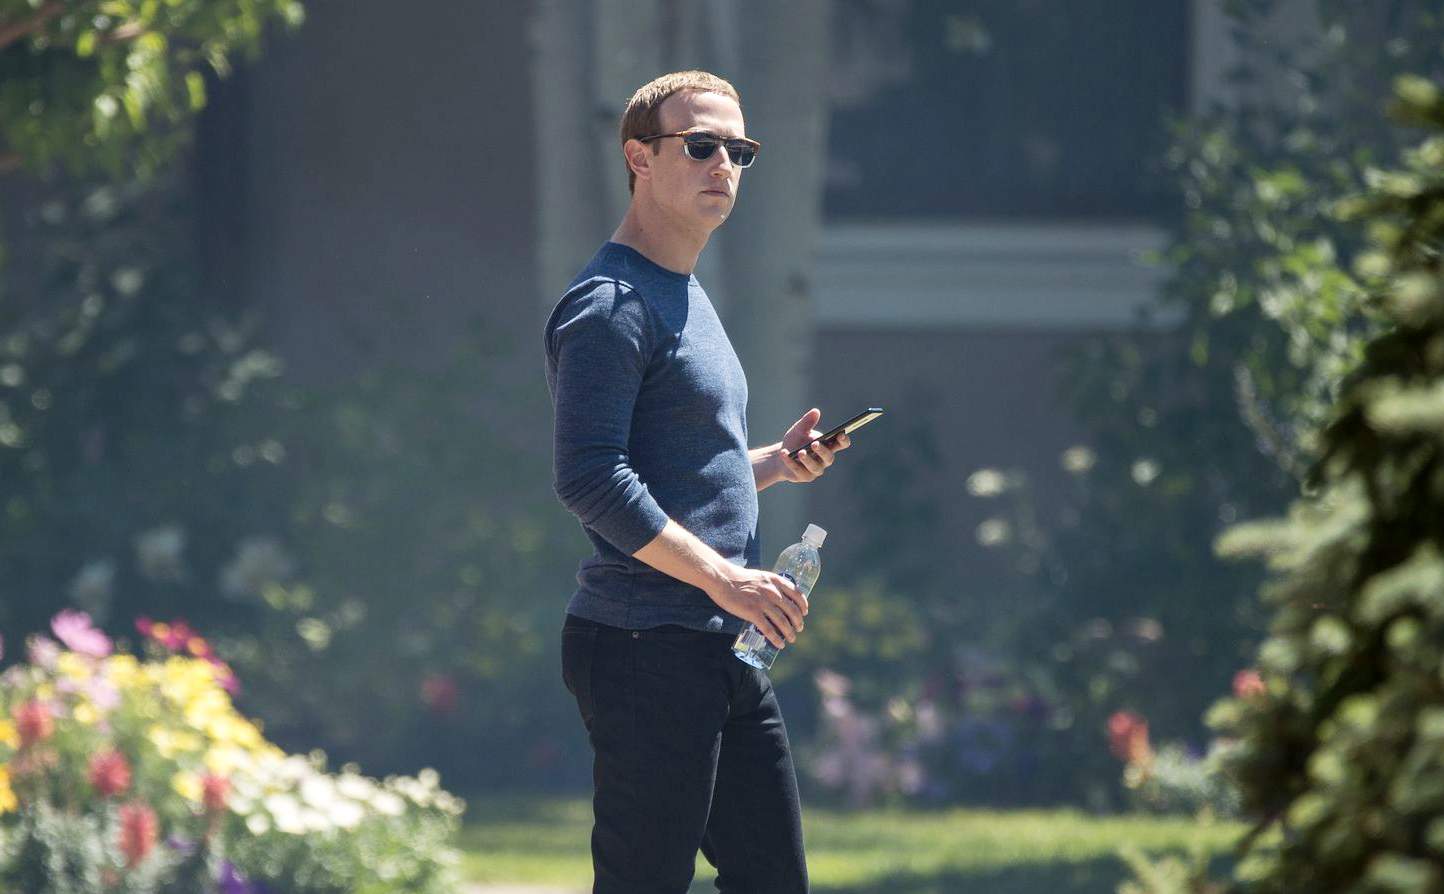 Mark Zuckerberg yêu cầu cấp quản lý Facebook chỉ dùng điện thoại Android